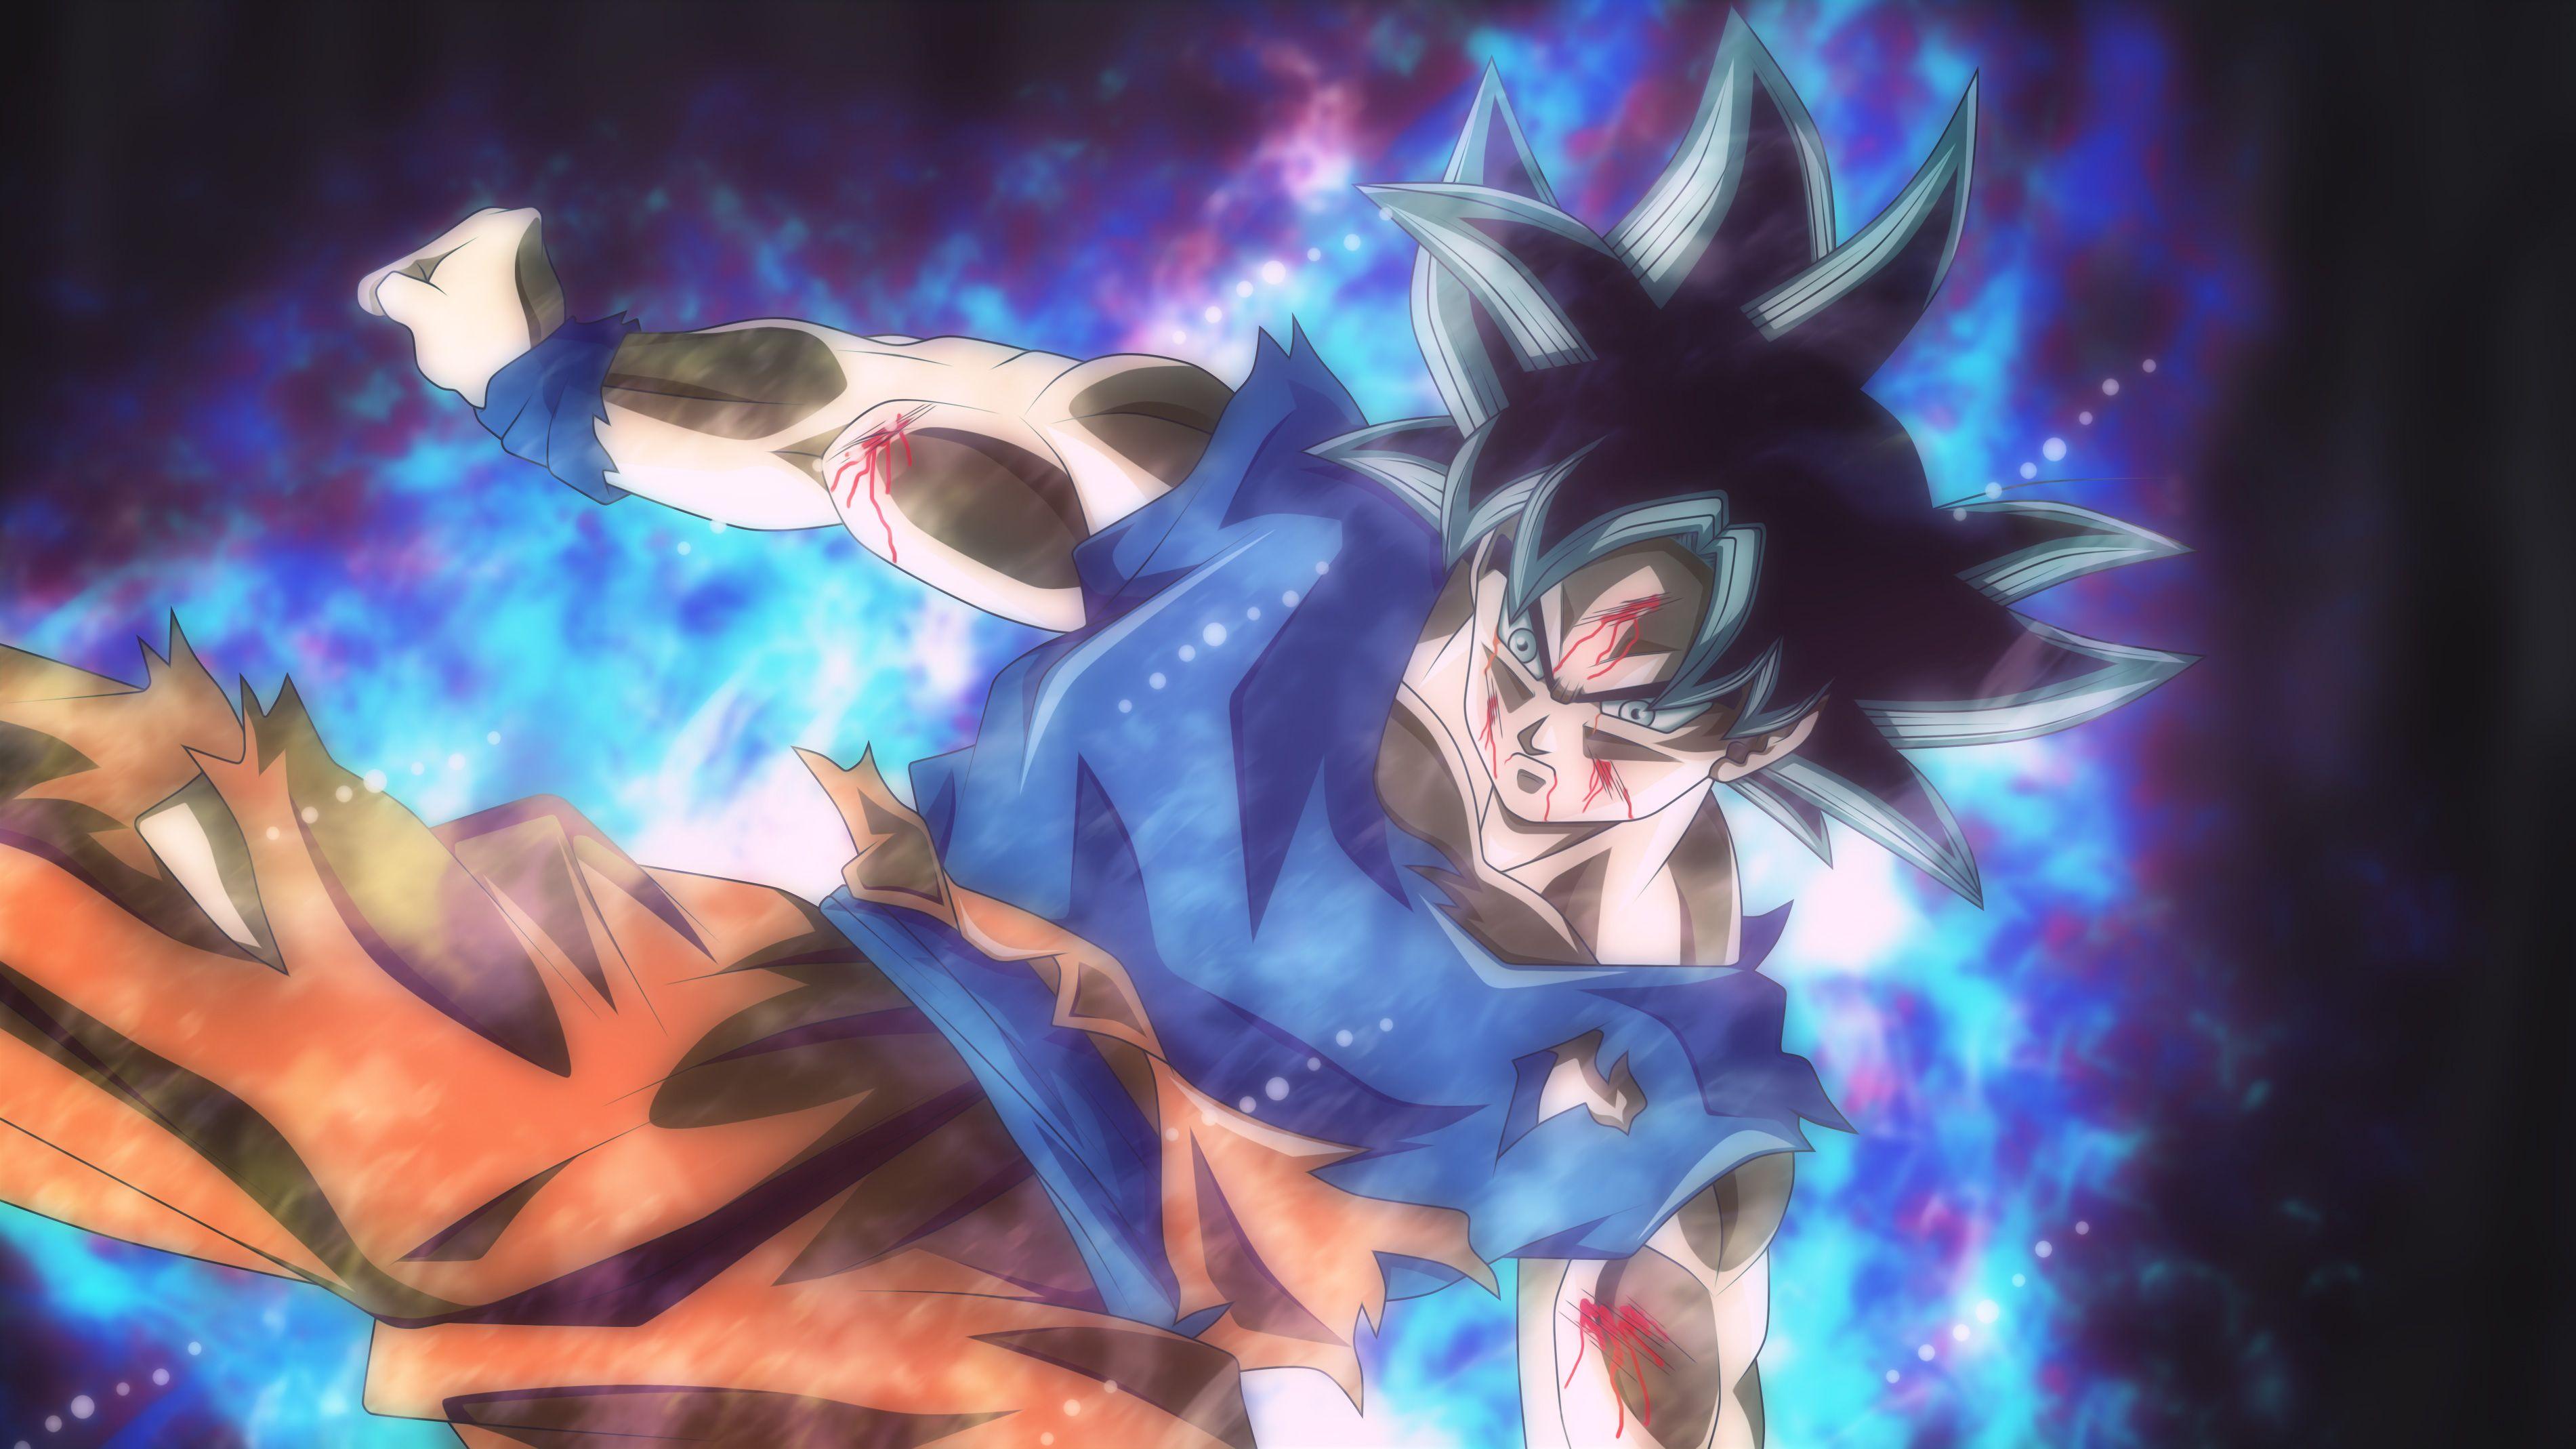 Anime Dragon Ball Super, HD Anime, 4k Wallpaper, Image